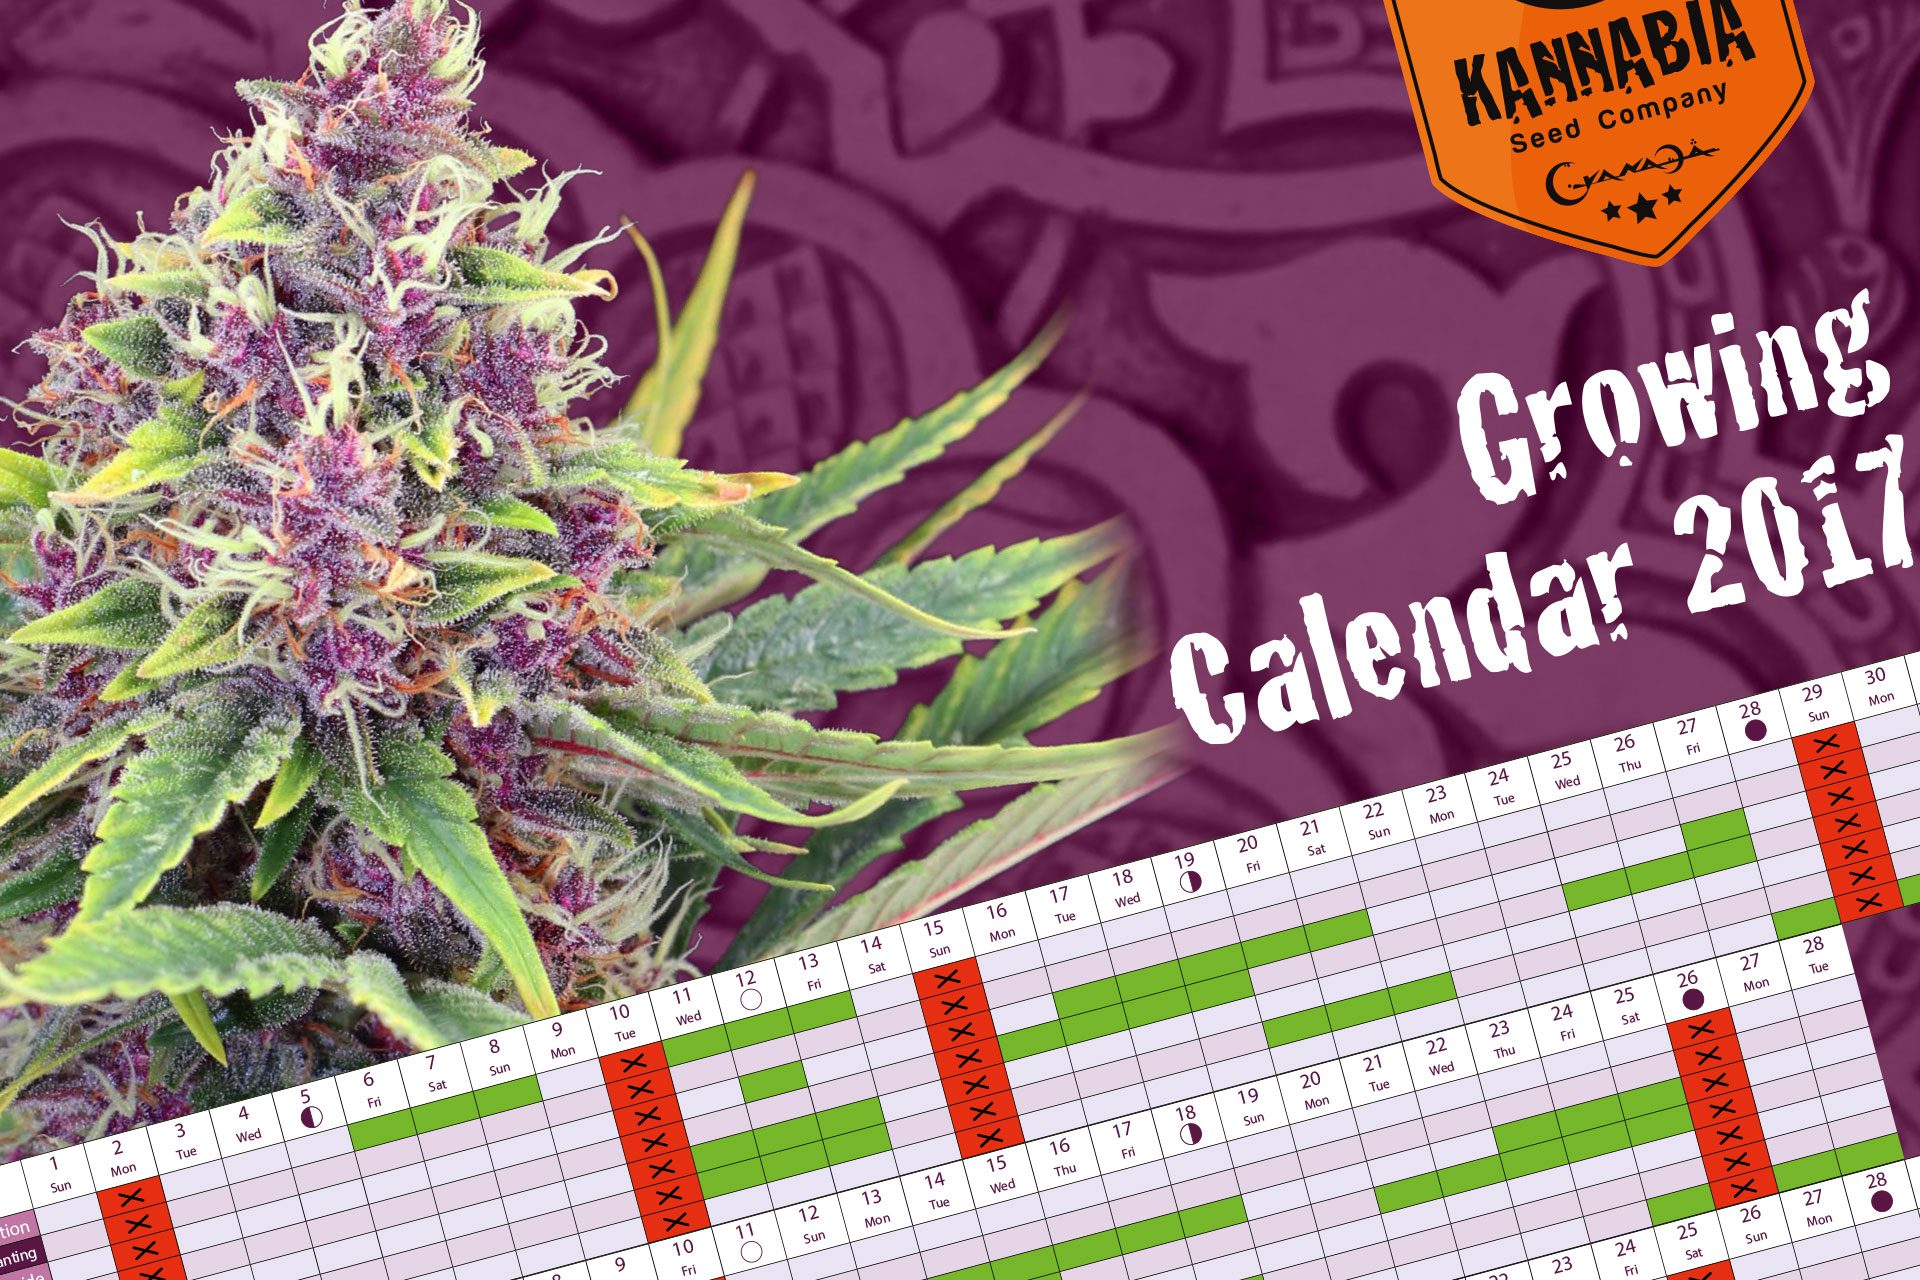 Calendario cultivo marihuana 2017